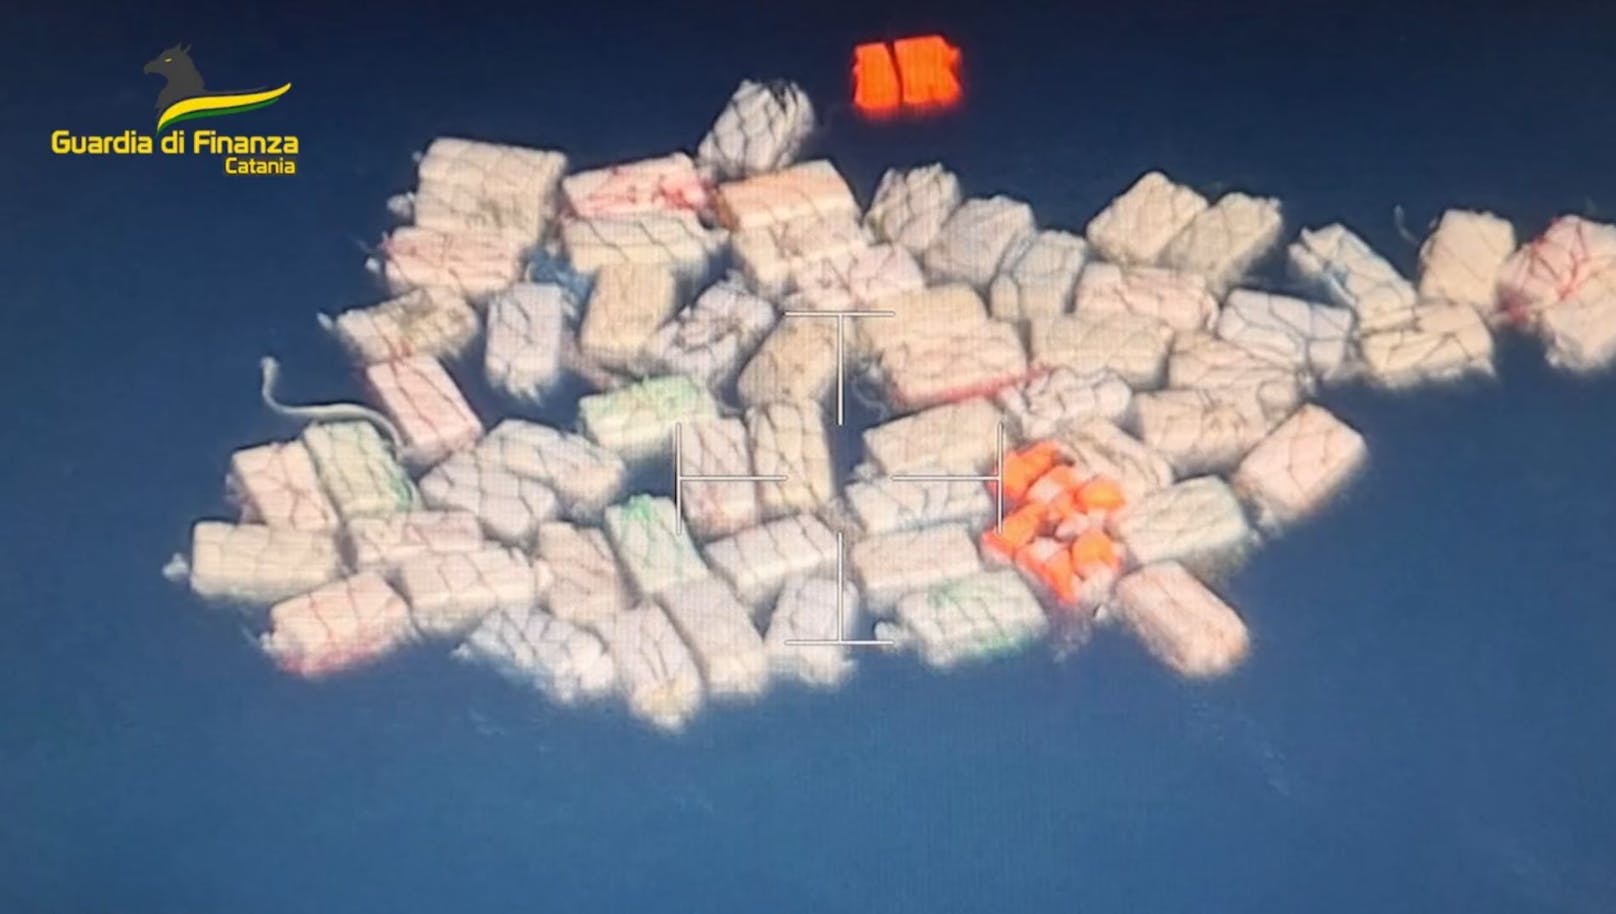 Die italienischen Behörden konnten zwei Tonnen Kokain sicherstellen. 